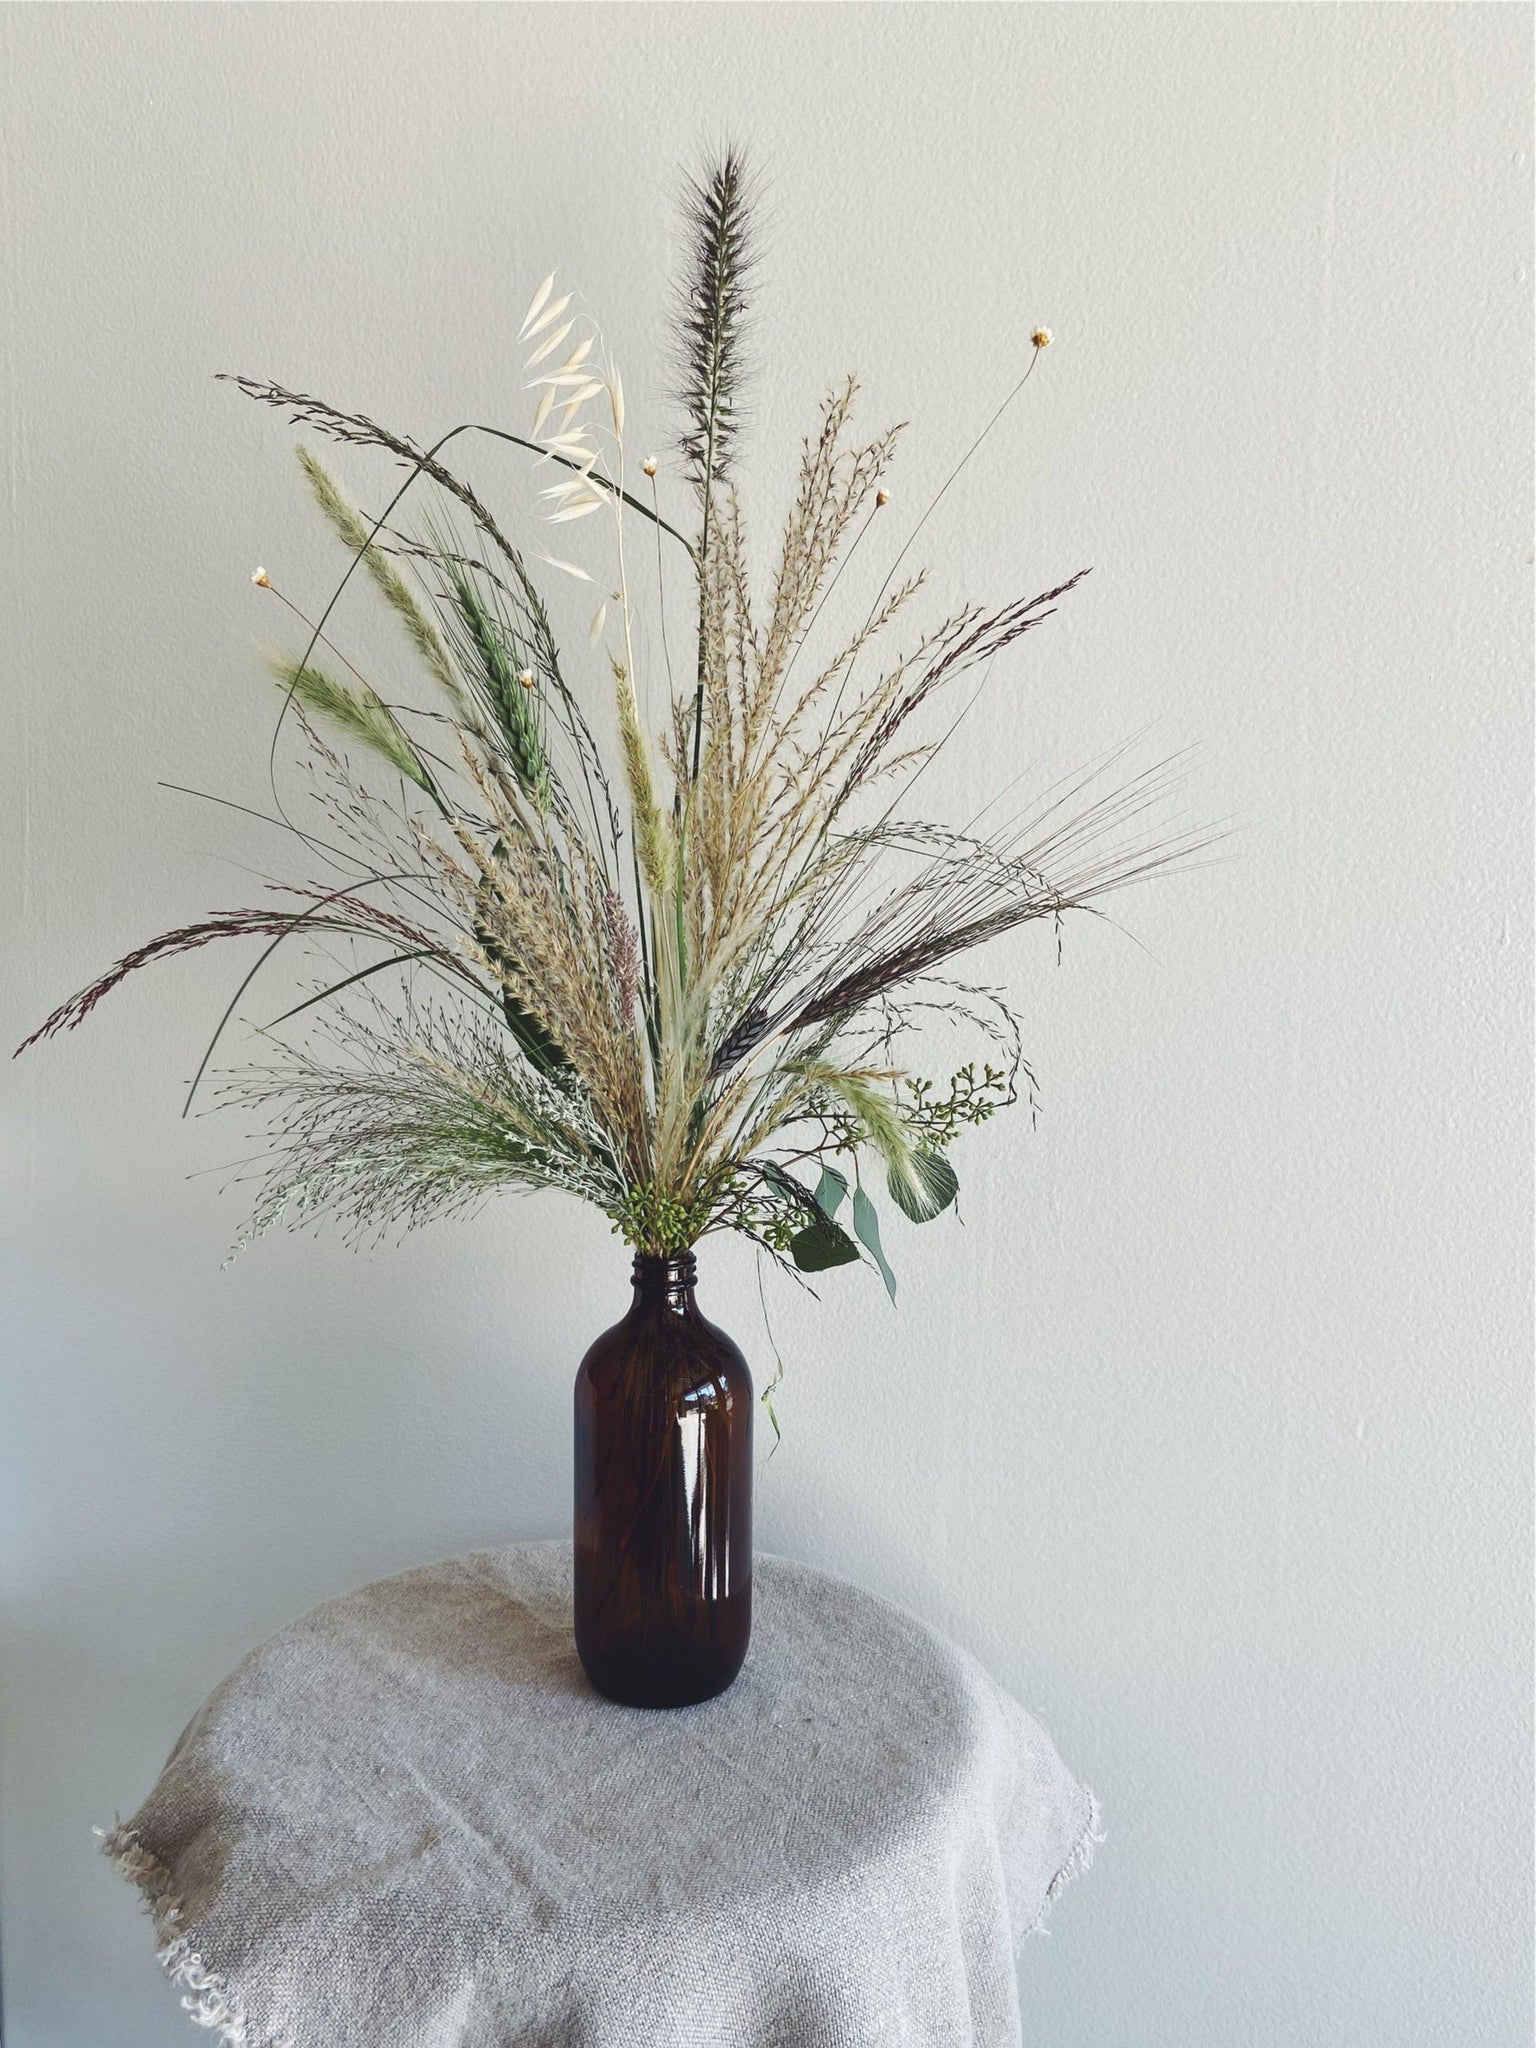 Arrangements - The Dried Bottle Arrangement - The Wild Bunch Florals - The Wild Bunch Florist - Vancouver Flower Shop Delivery